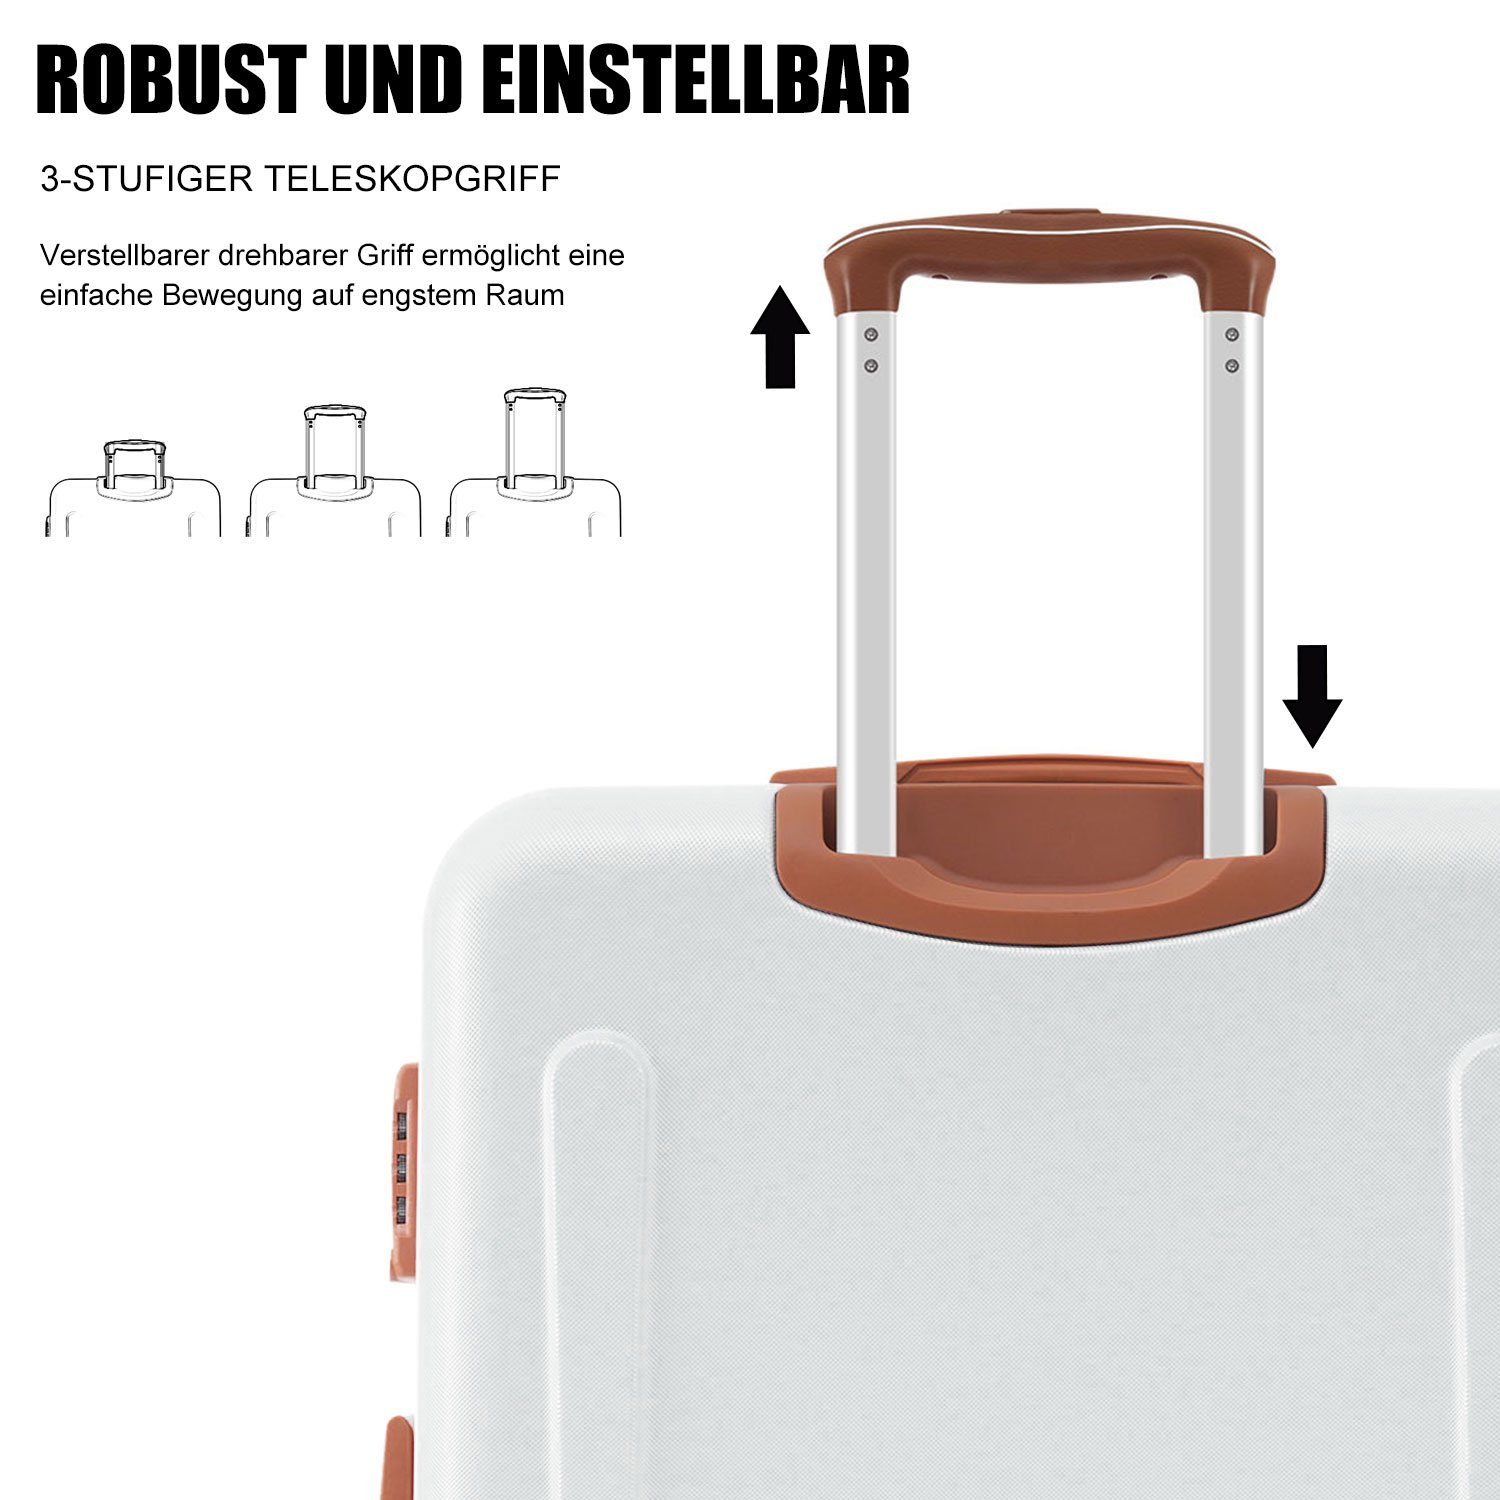 Creame Trolleyset Handgepäck Rollen, (3 Ulife TSA 4 tlg) Zollschloss, Kofferset Reisekoffer ABS-Material,